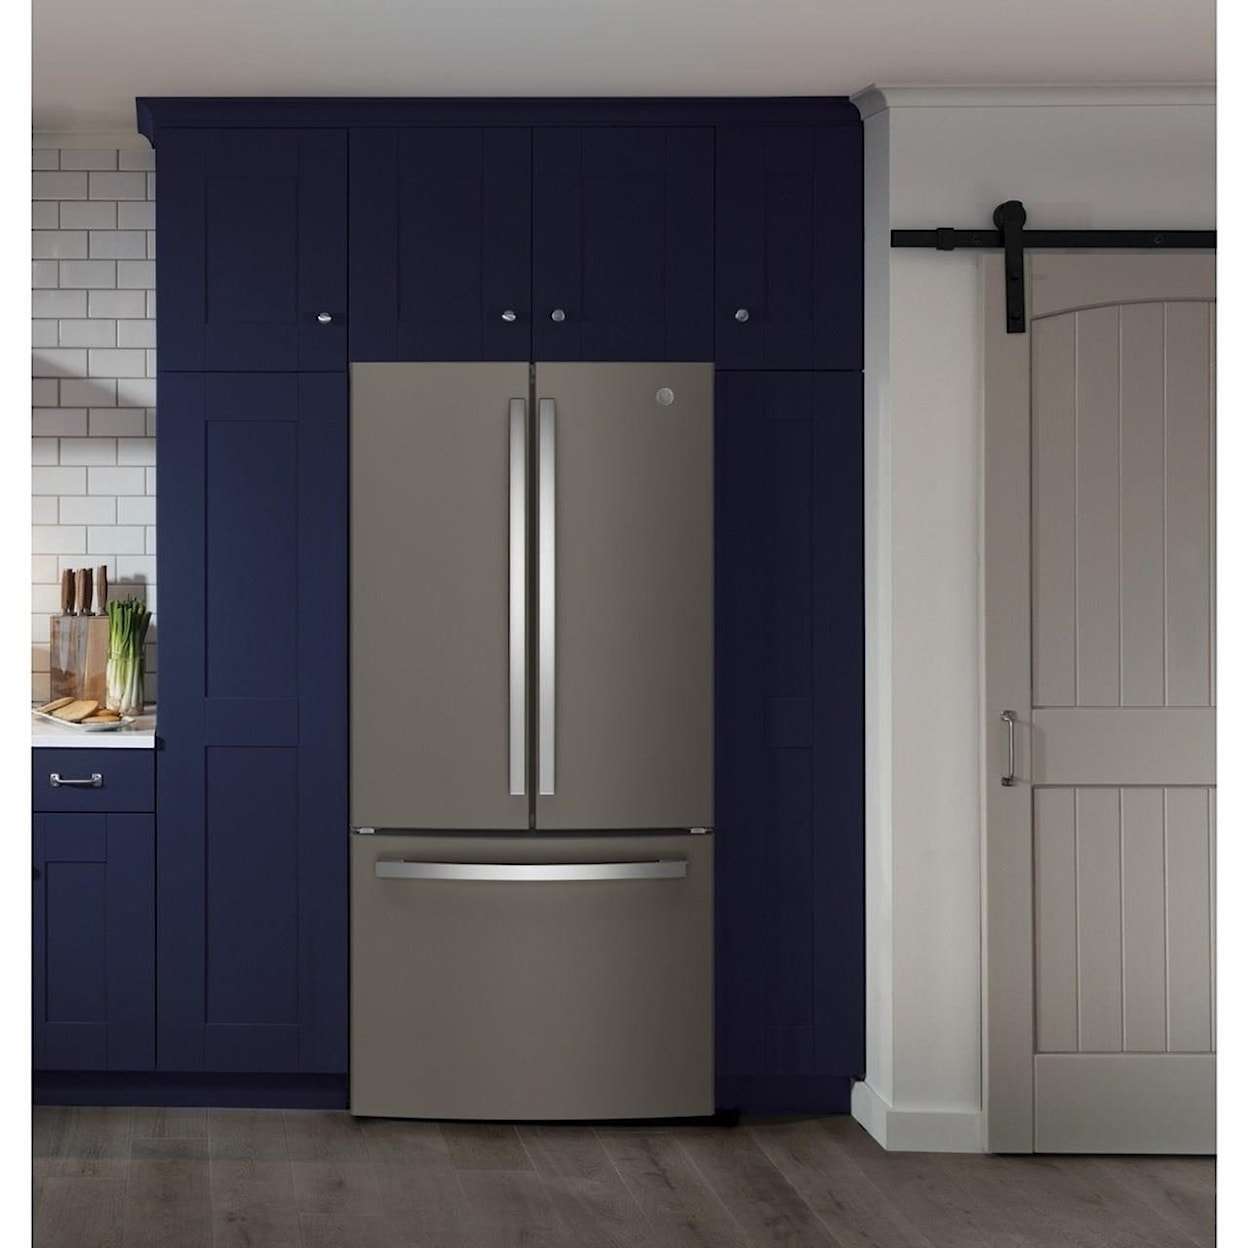 GE Appliances GE French Door Refrigerators GE® ENERGY STAR® 18.6 Cu. Ft. Counter-Depth 